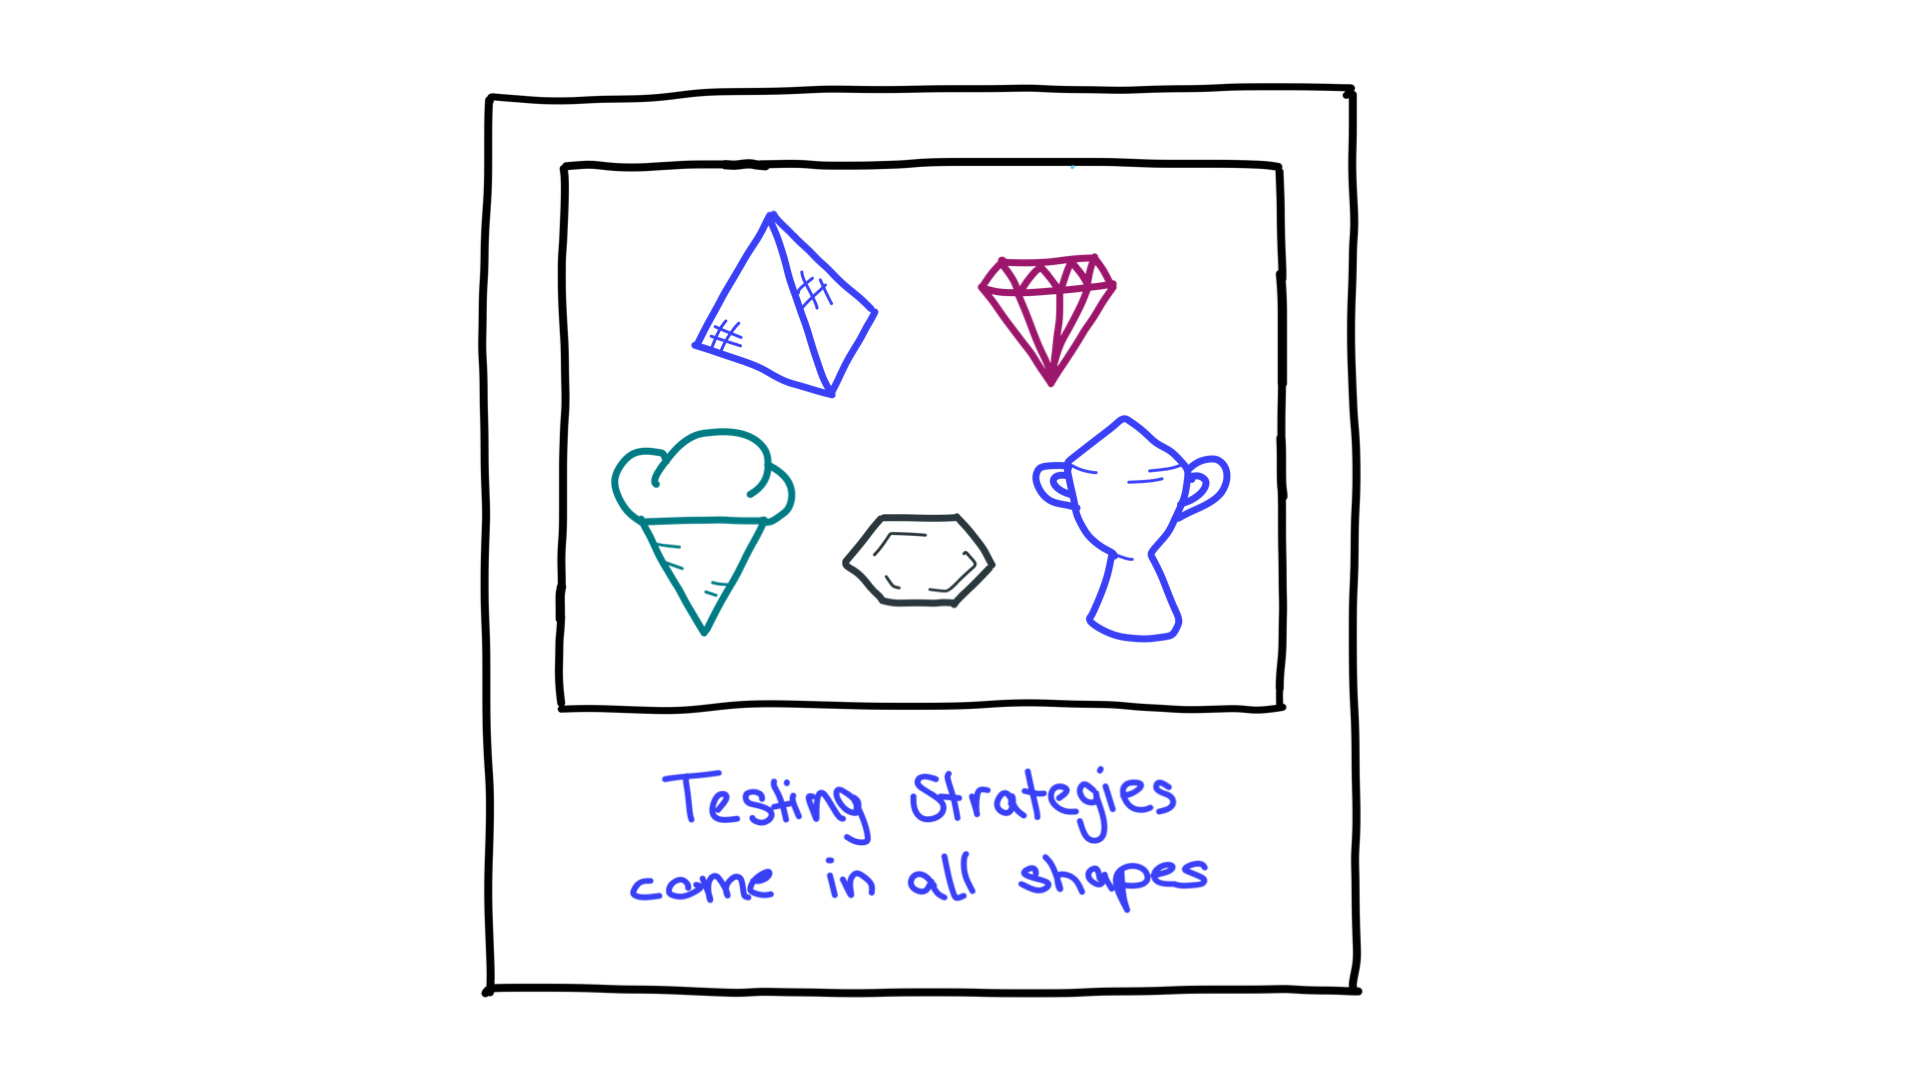 Piramit, elmas, buz külahı, petek ve kupa gibi birçok şekil; test stratejilerini temsil ediyor.